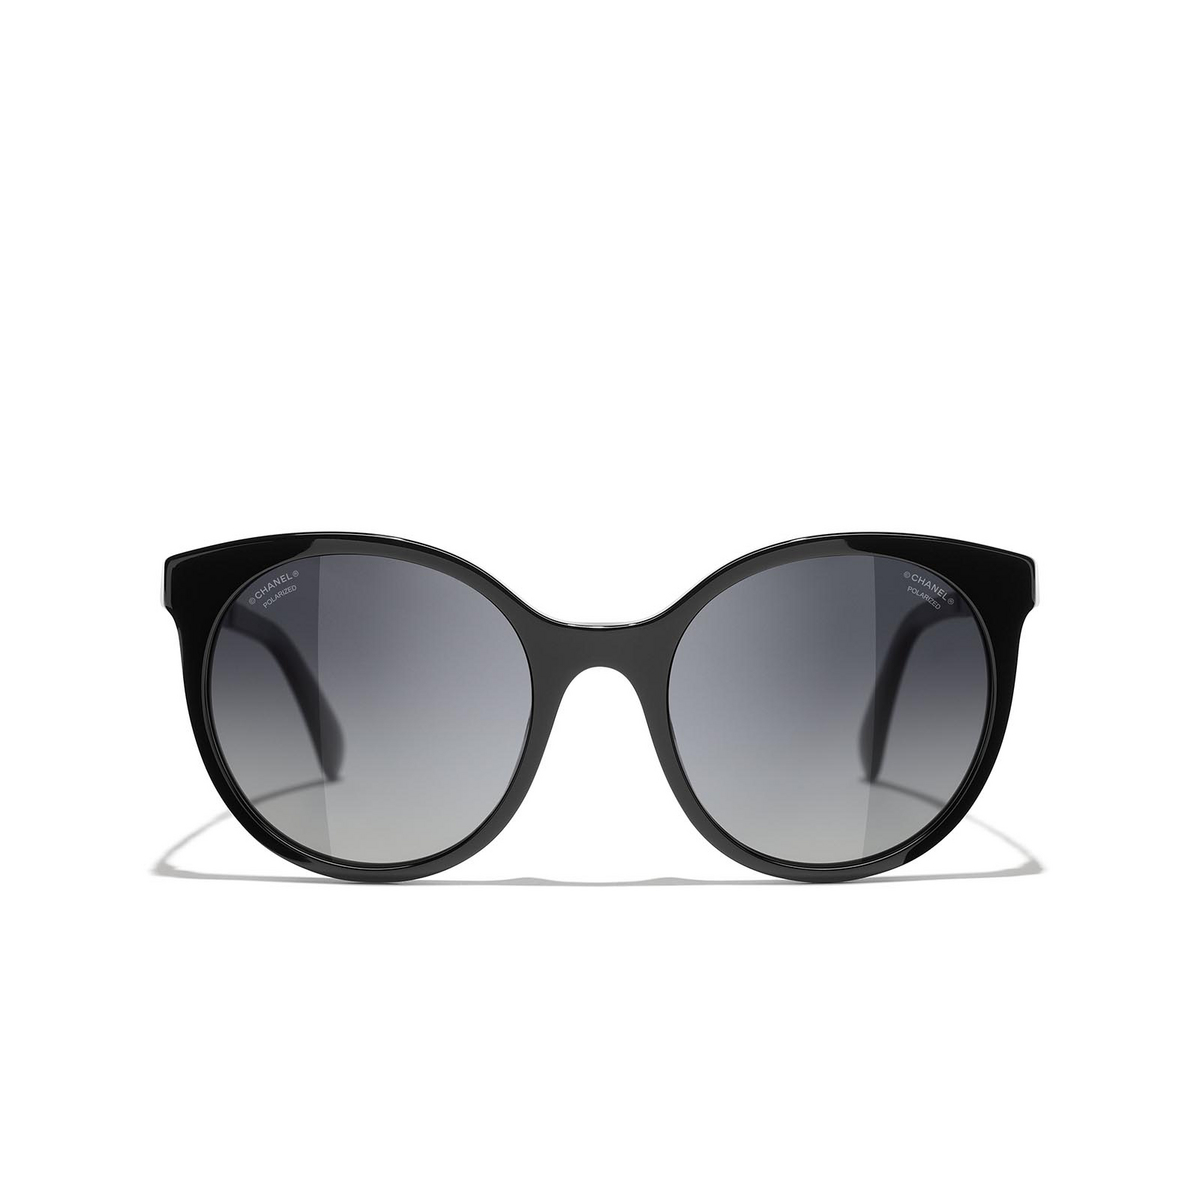 CHANEL pantos Sunglasses C888S8 Black - front view